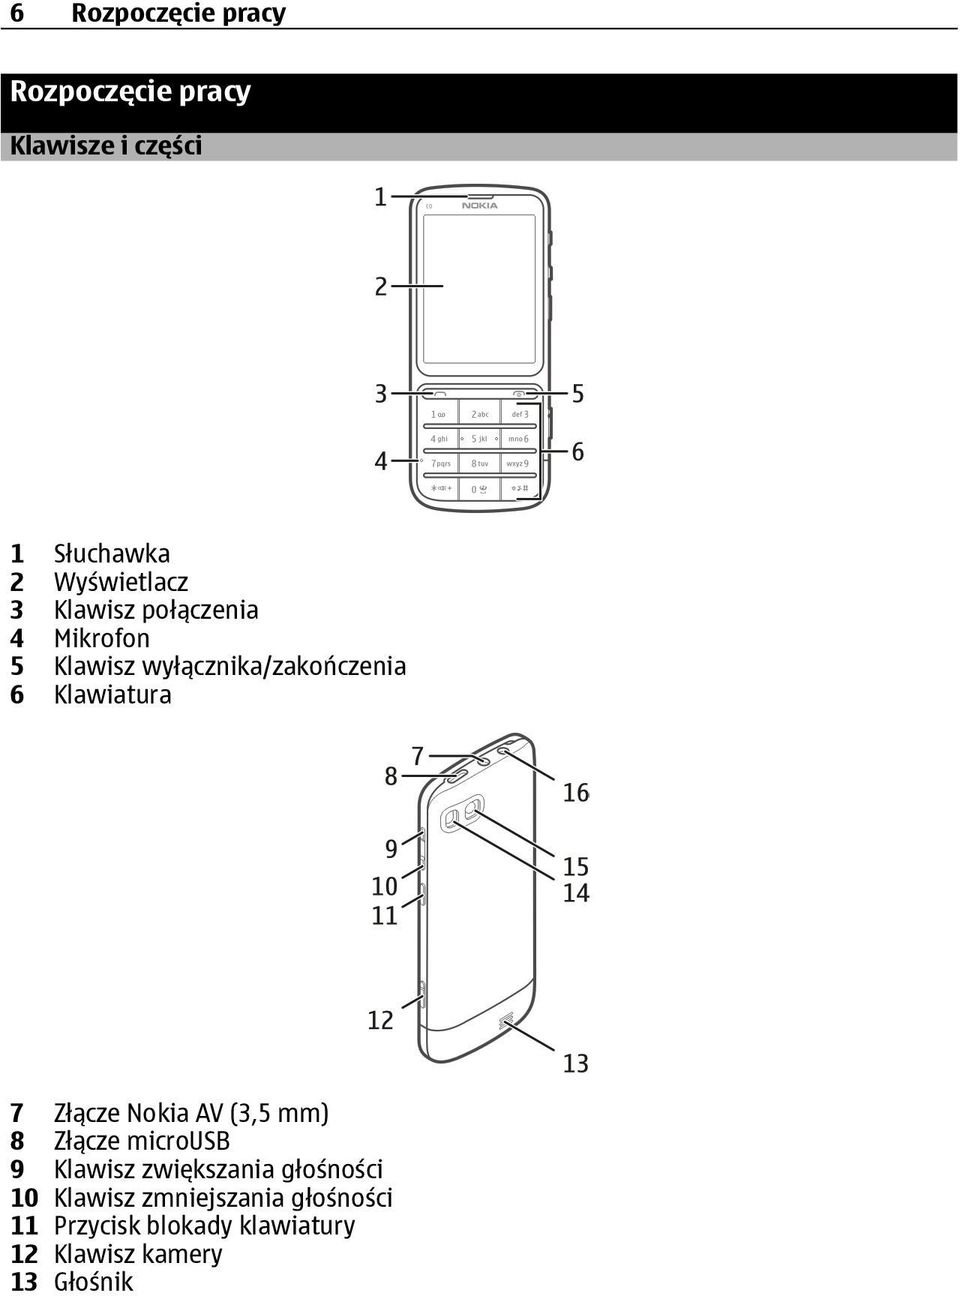 Złącze Nokia AV (3,5 mm) 8 Złącze microusb 9 Klawisz zwiększania głośności 10